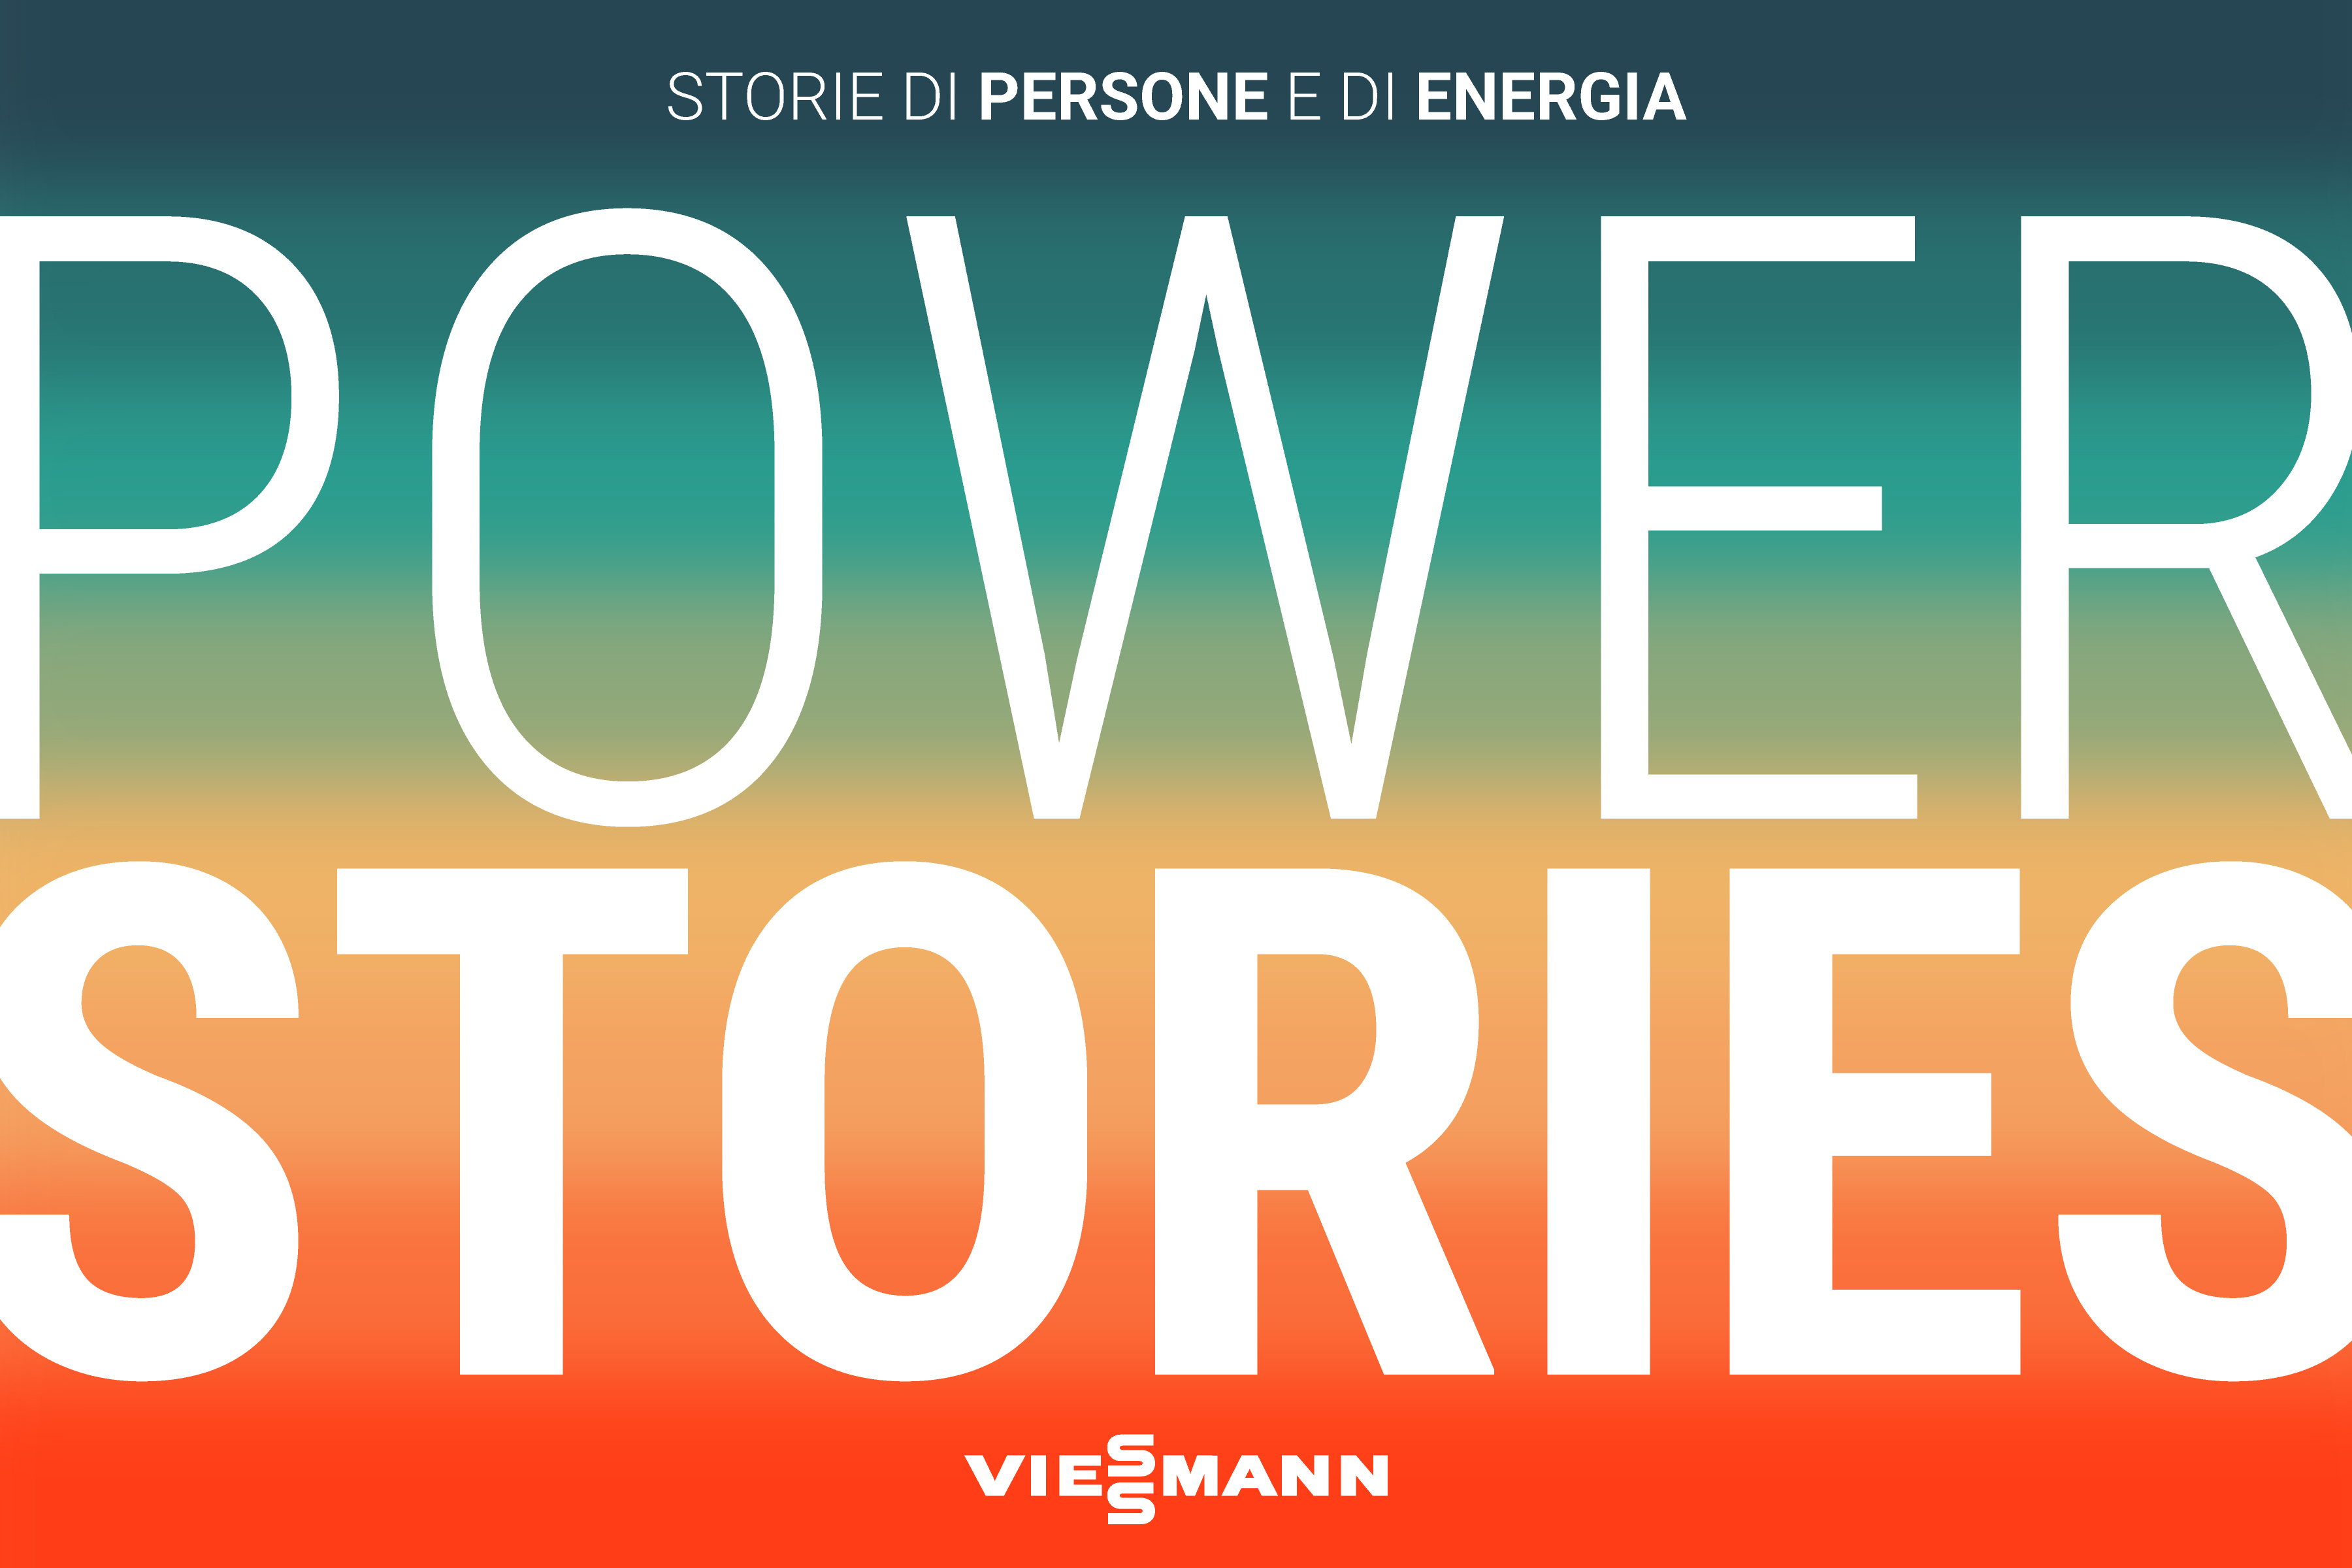 Power Stories: il podcast di Viessmann racconta storie di persone e di energia 